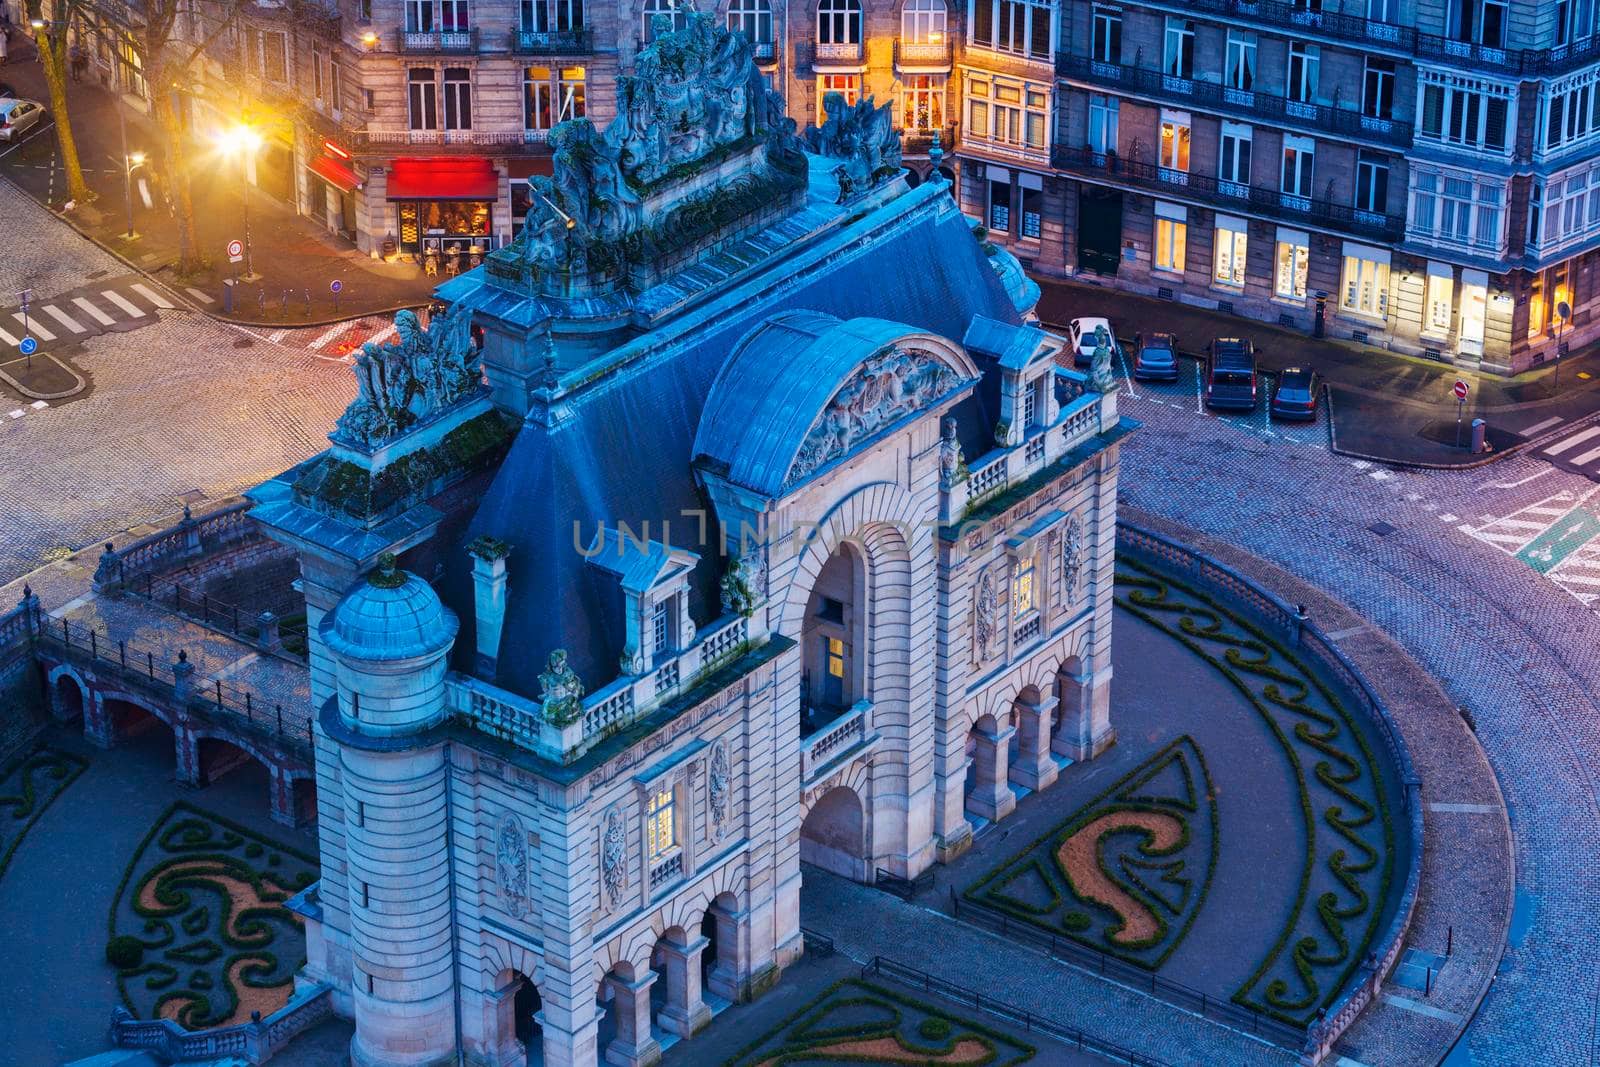 Porta de Paris in Lille by benkrut